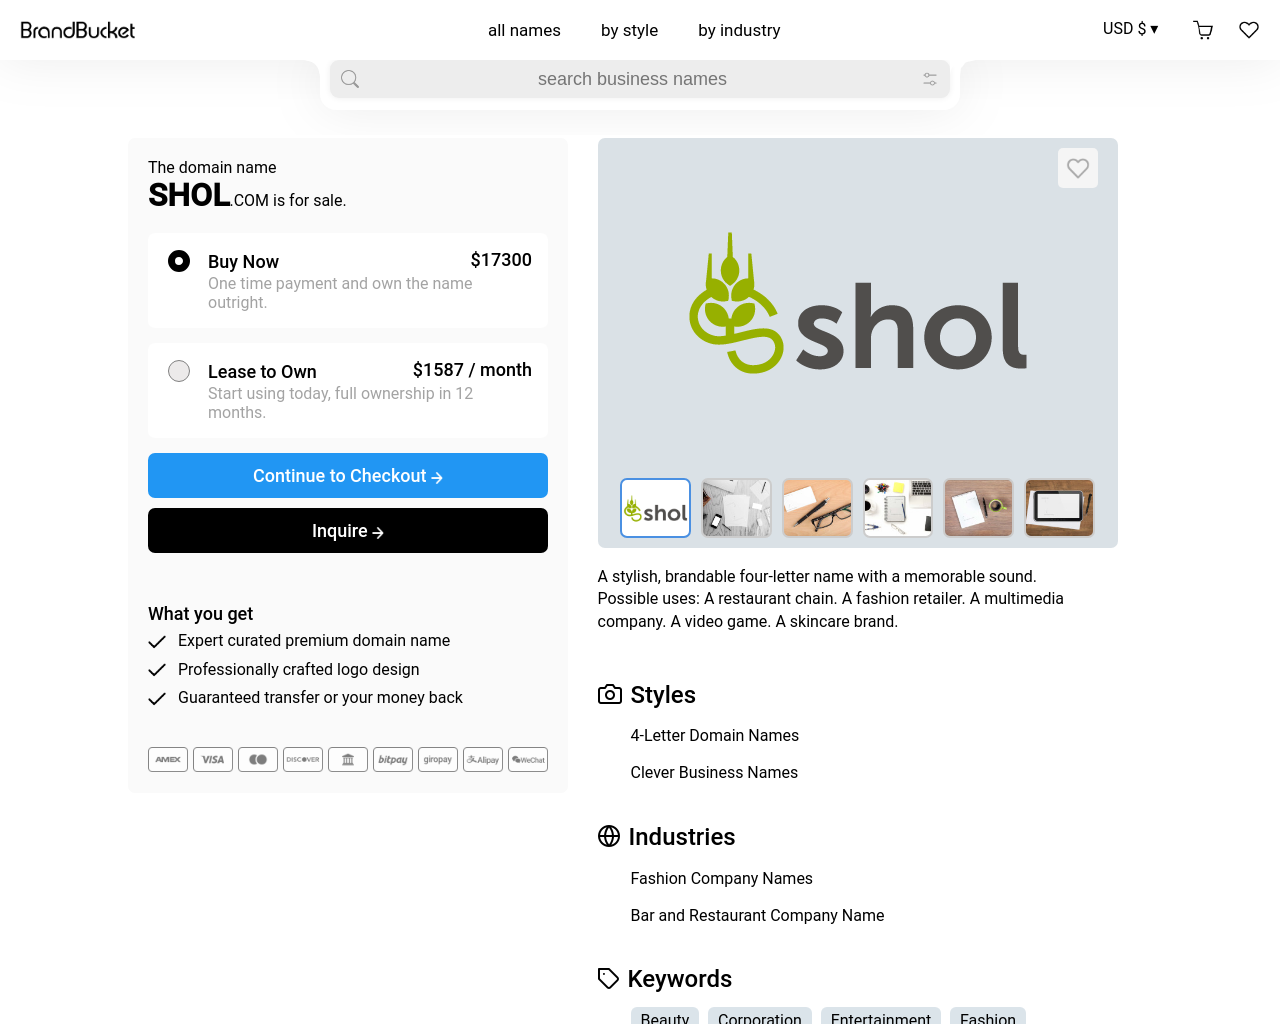 shol.com